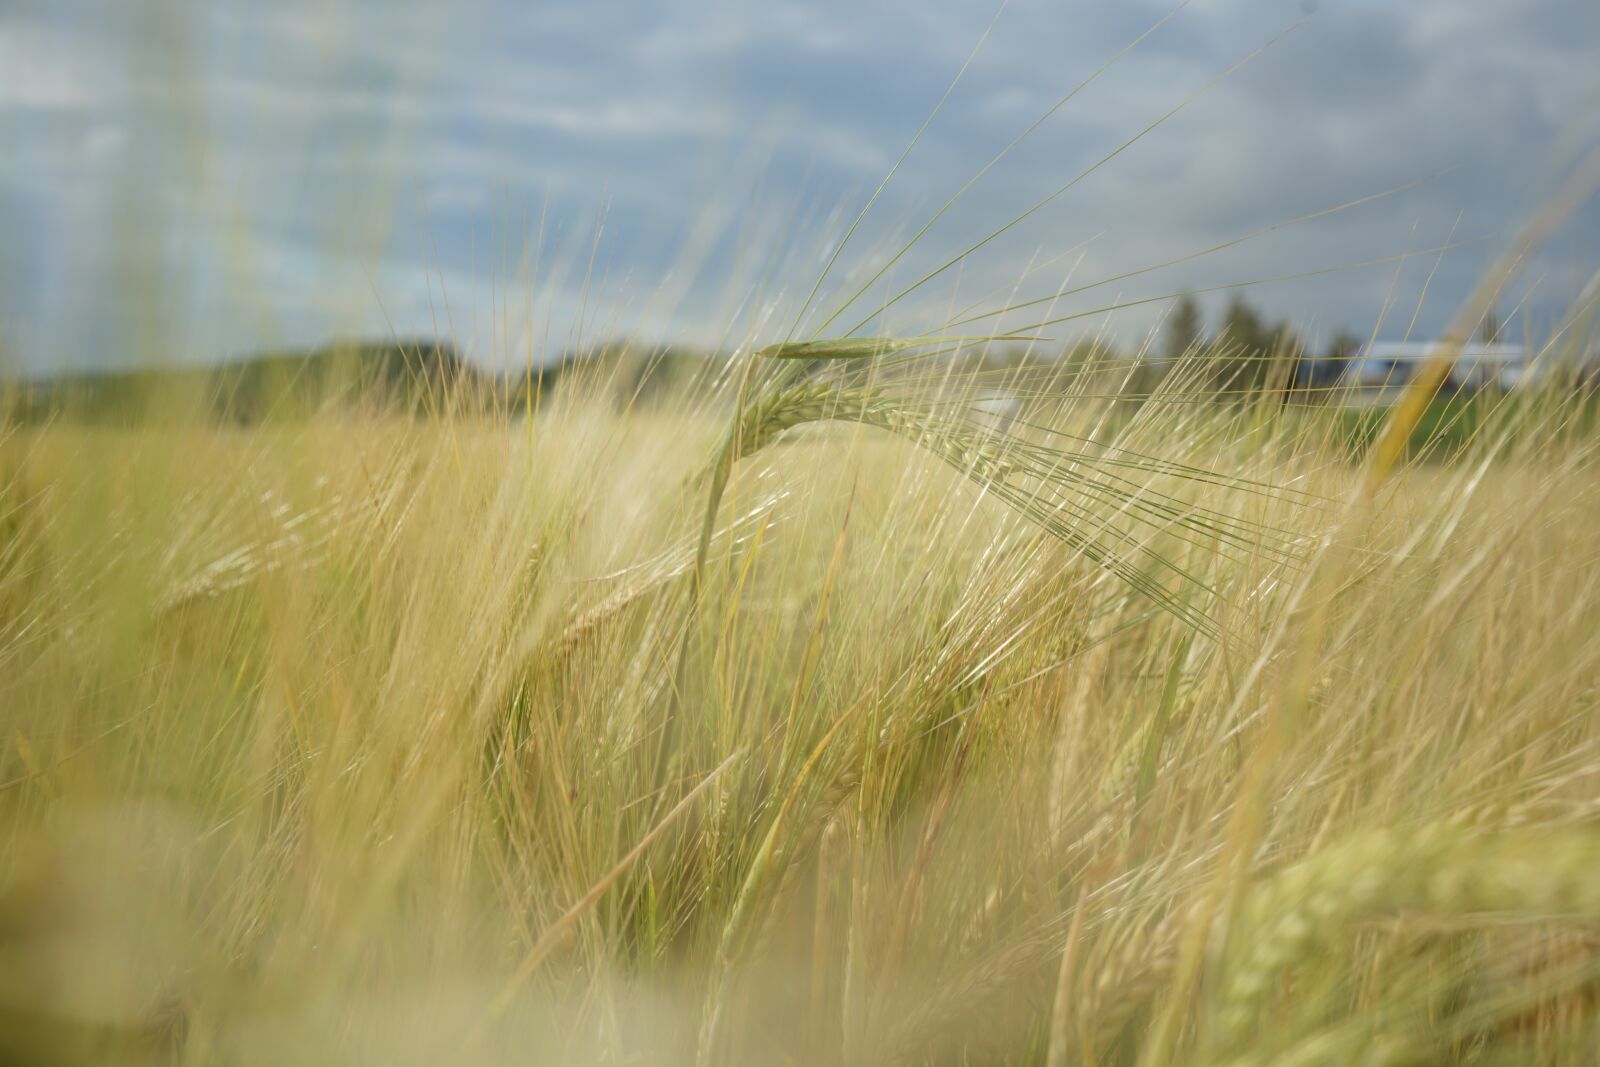 Samyang AF 35mm F2.8 FE sample photo. Barley, field, agriculture photography